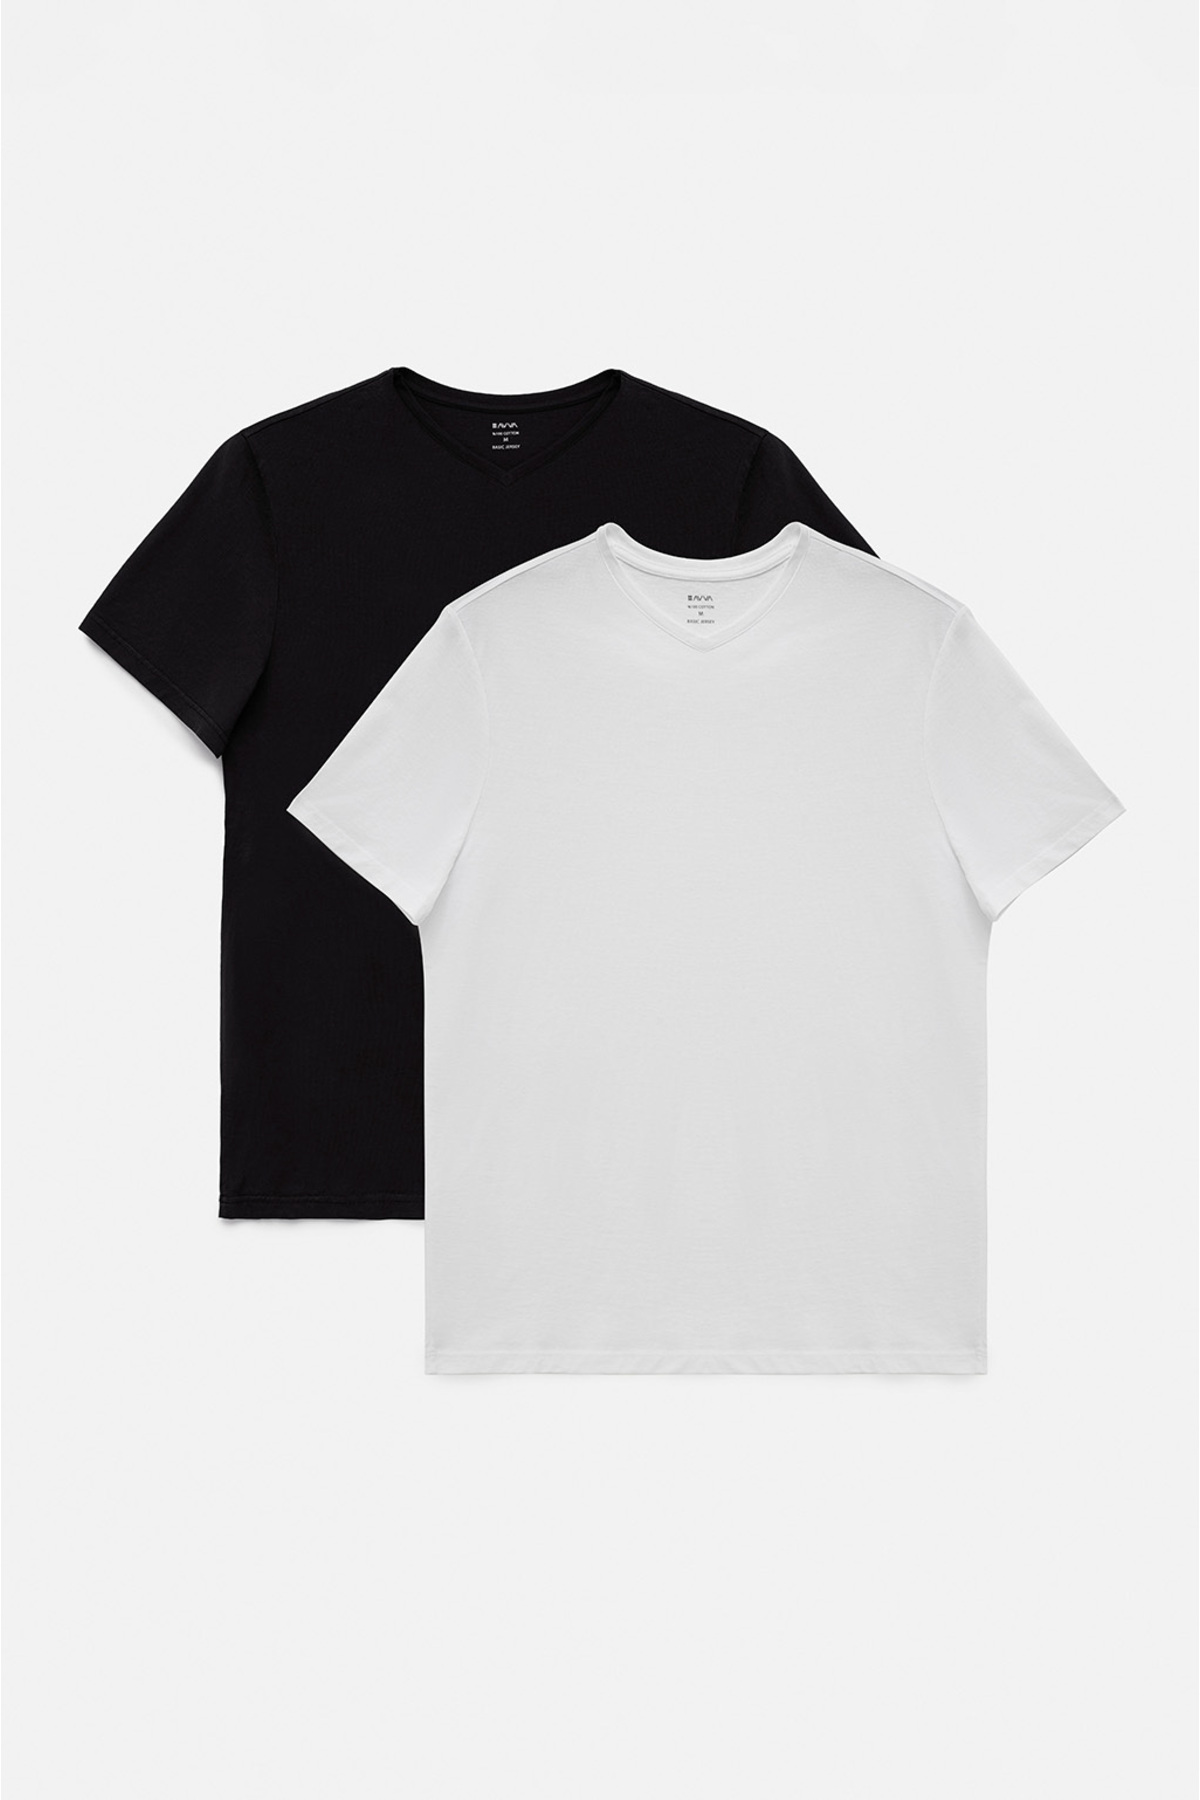 Avva تی شرت مردانه سیاه-سفید 2 تکه یقه V ساده 100% پنبه با برش معمولی و استاندارد E001022